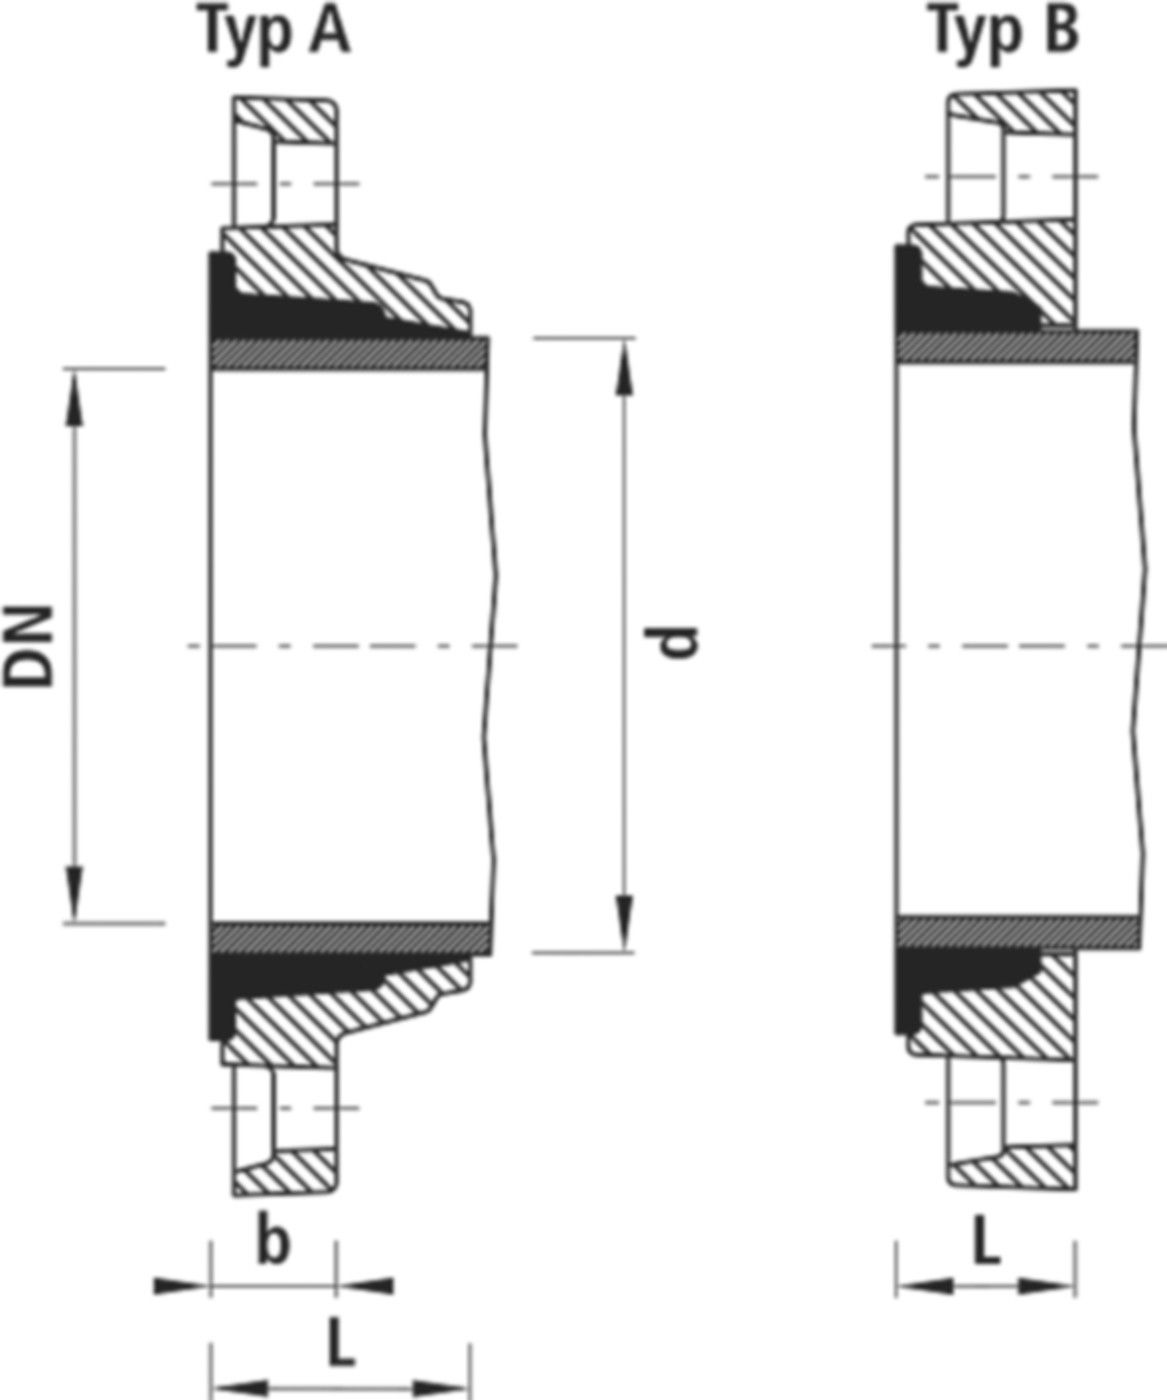 Zweikammer-Flansch für Stahlrohre 7130 PN 10 DN 200 / AD 211mm - Hawle Flanschformstücke